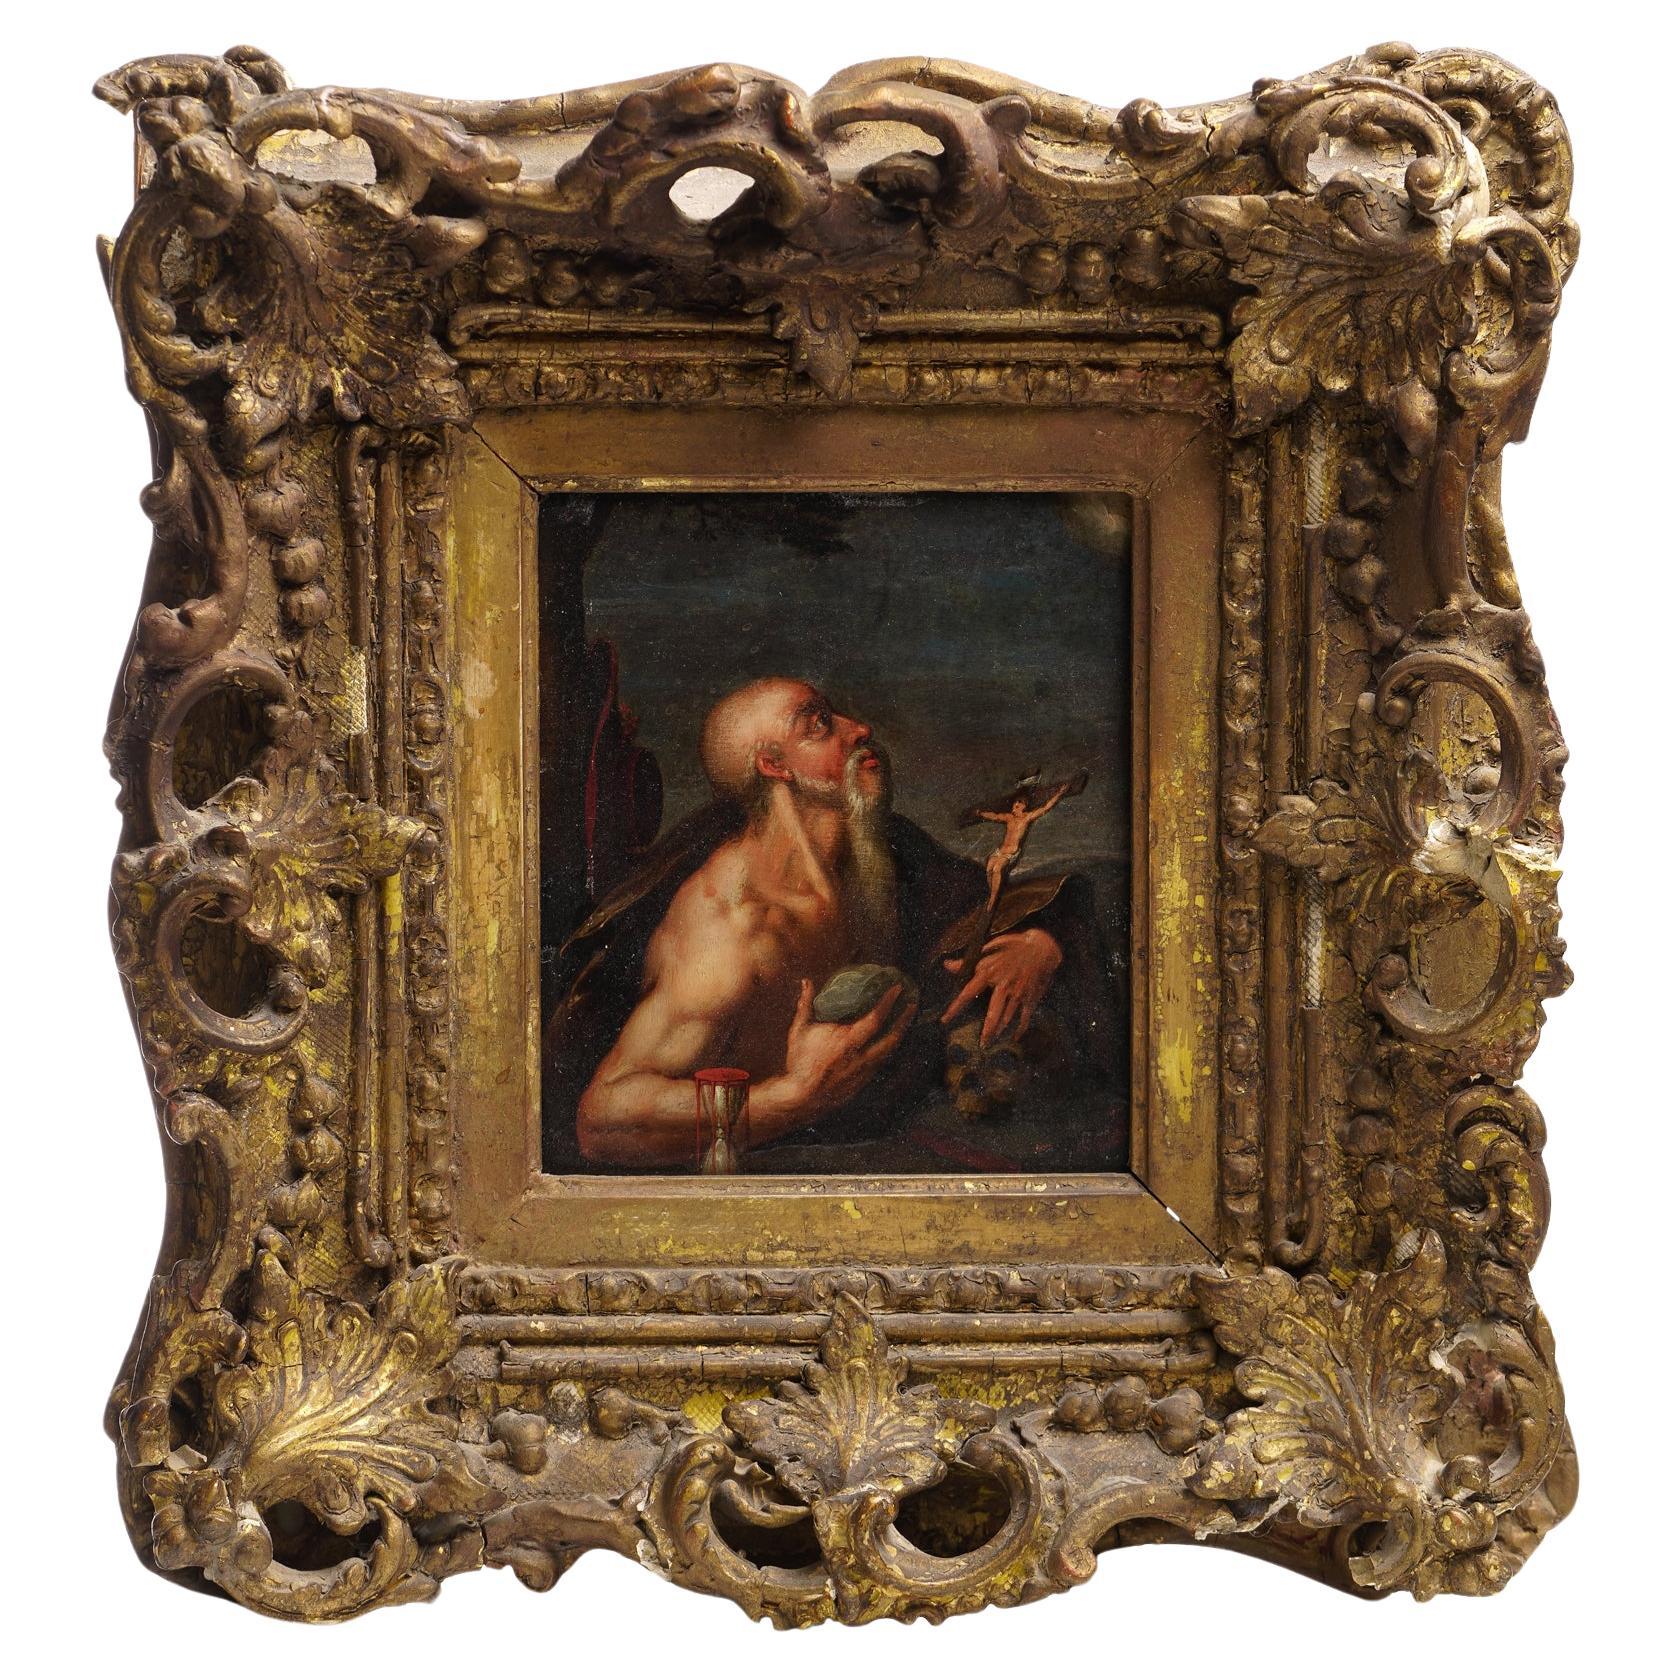 Portrait à l'huile sur cuivre du 17e siècle - Saint Jérôme